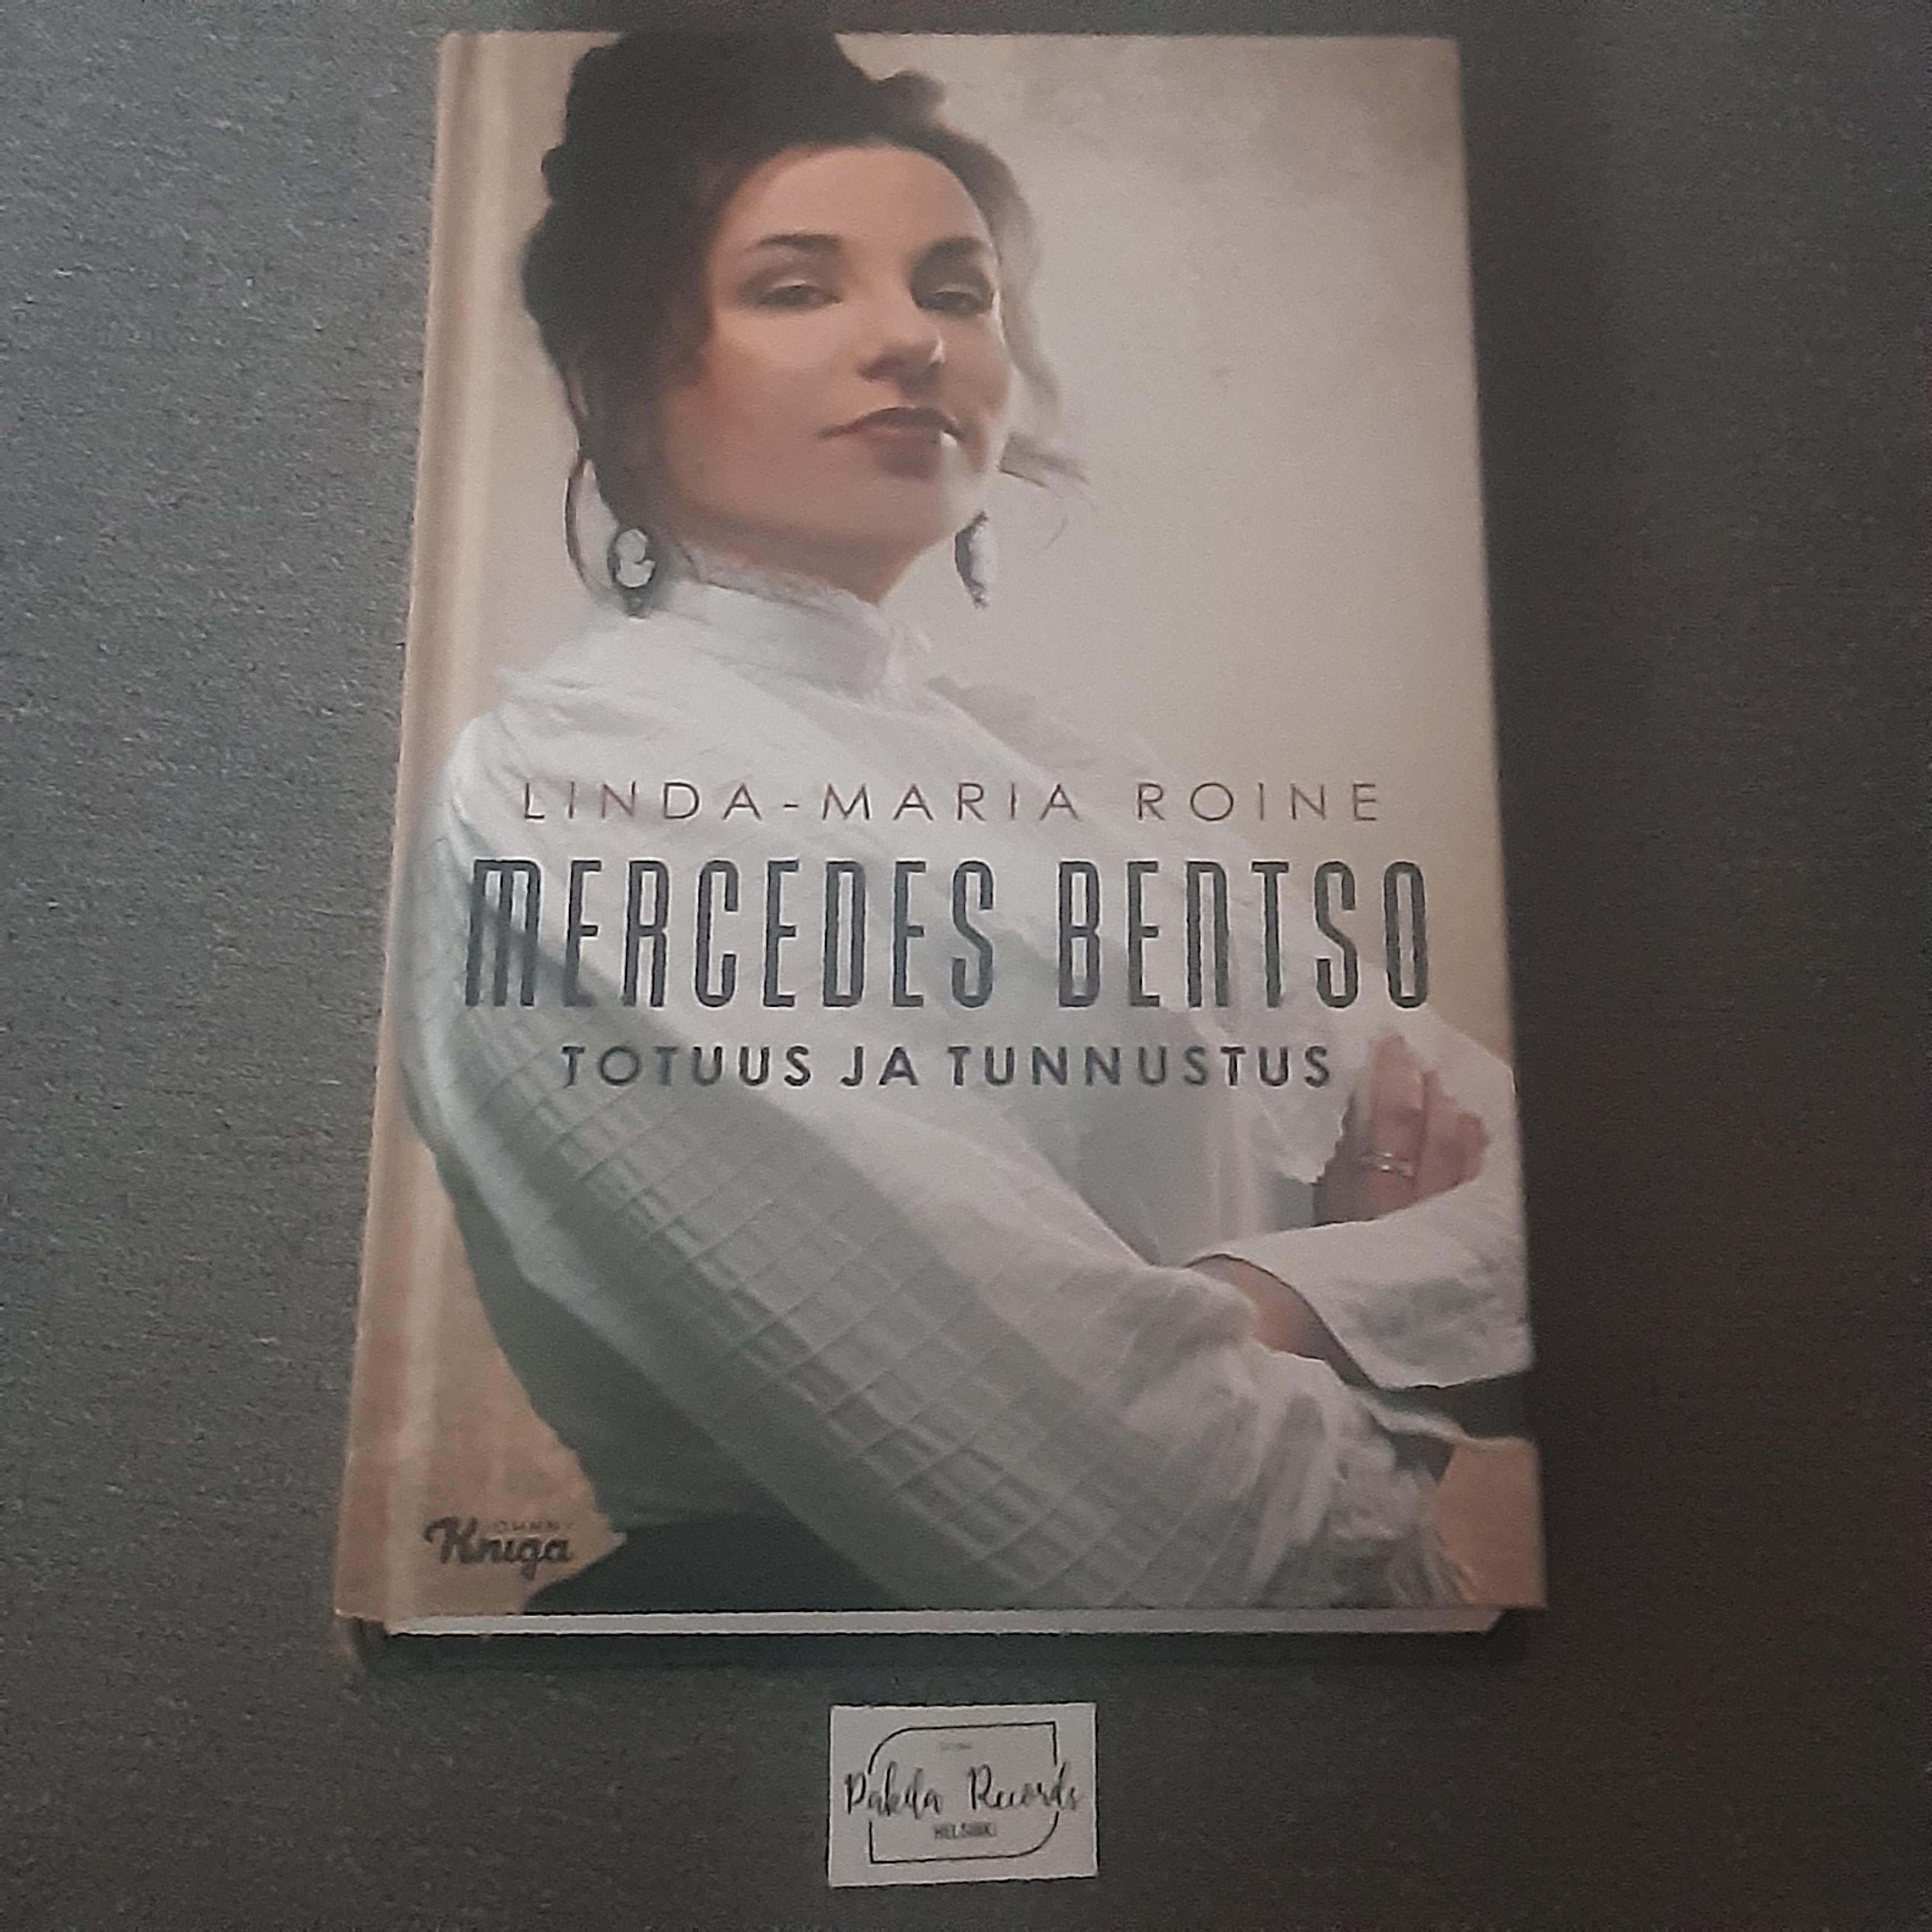 Mercedes Bentso, Totuus ja tunnustus - Linda-Maria Roine - Kirja (käytetty)